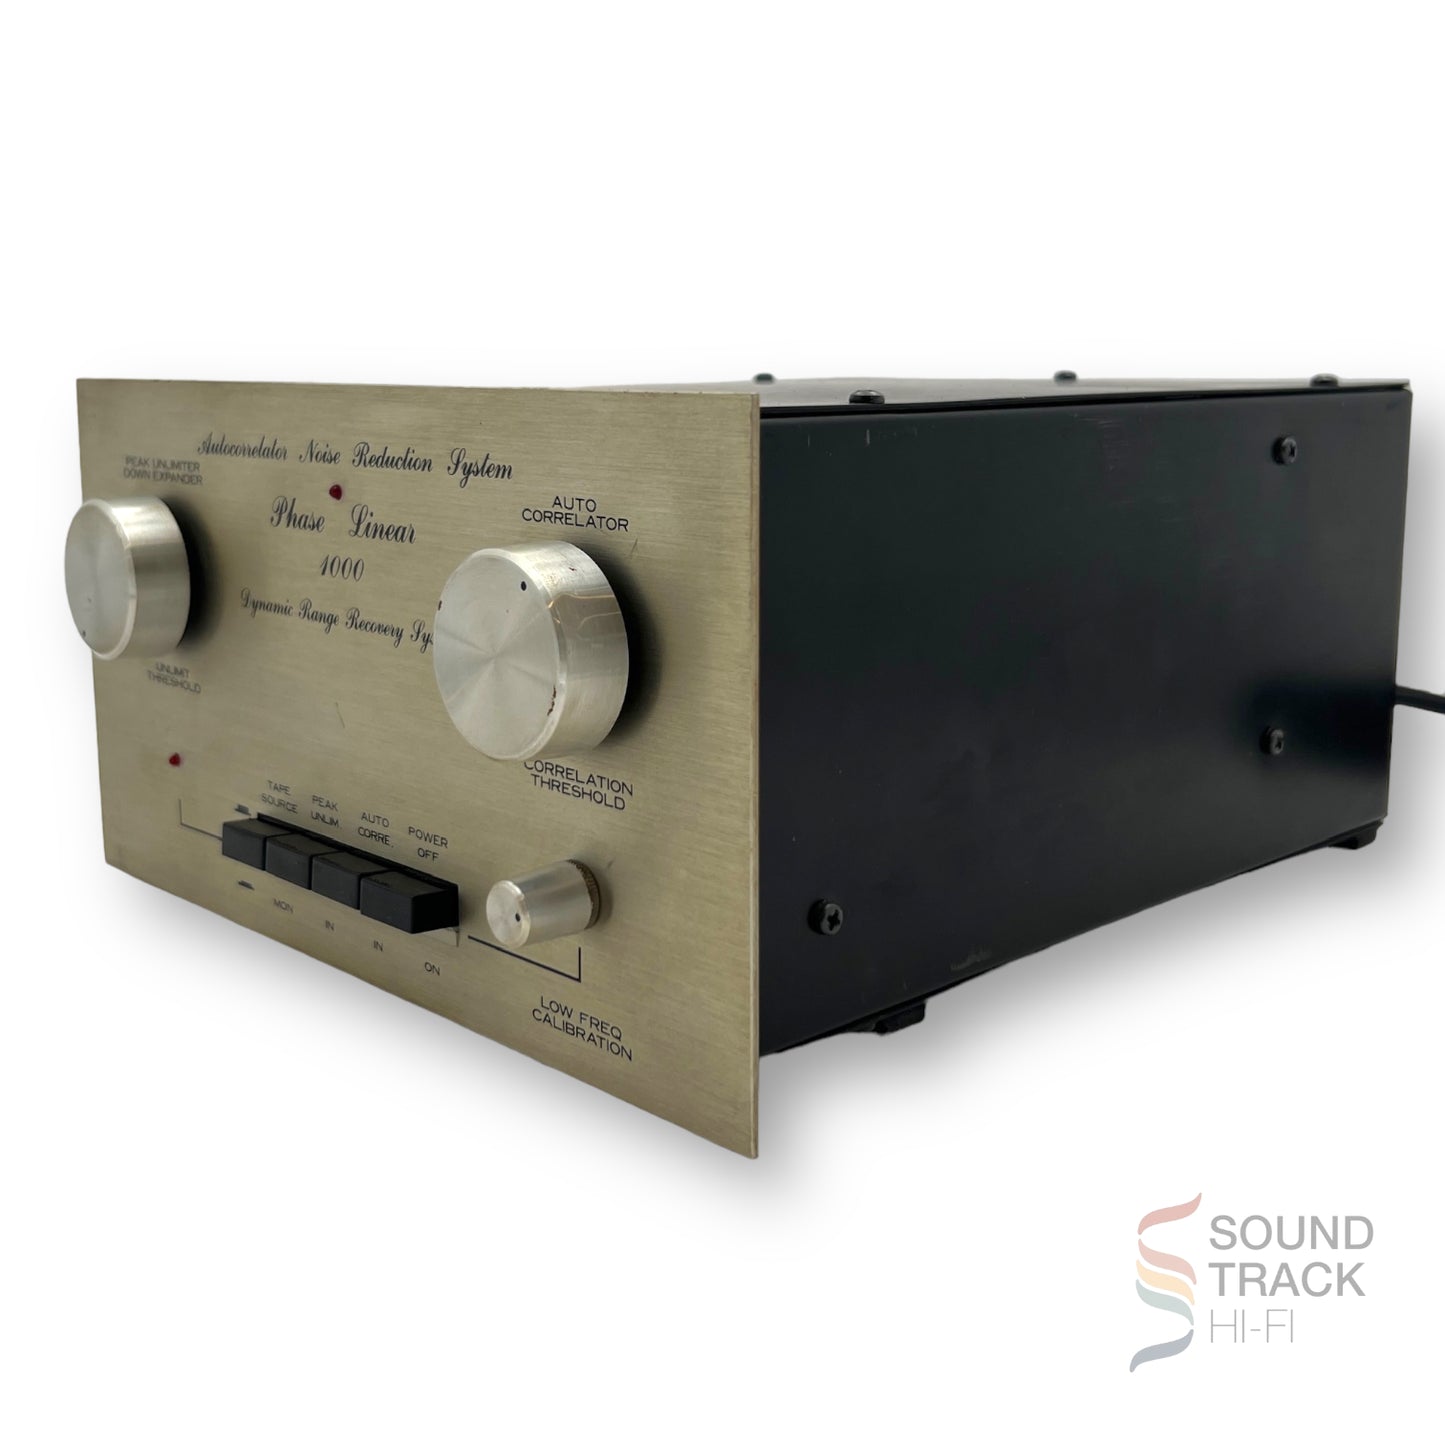 Phase Linear 1000 Autocorrelator Noise Reduction System